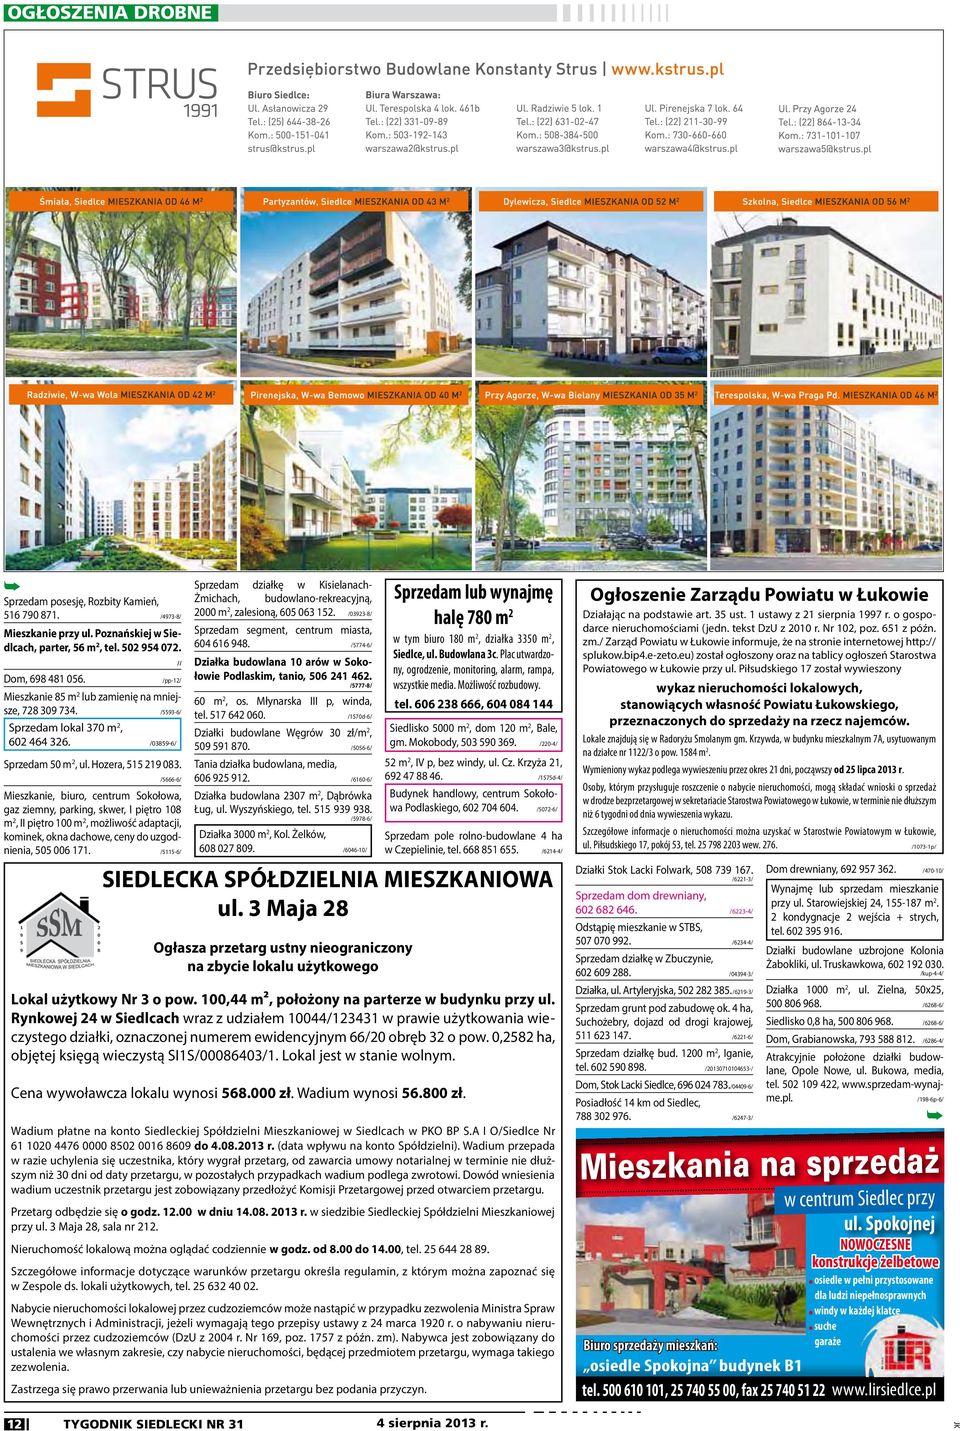 // /5666-6/ Mieszkanie, biuro, centrum Sokołowa, gaz ziemny, parking, skwer, I piętro 108 m 2, II piętro 100 m 2, możliwość adaptacji, kominek, okna dachowe, ceny do uzgodnienia, 505 006 171.